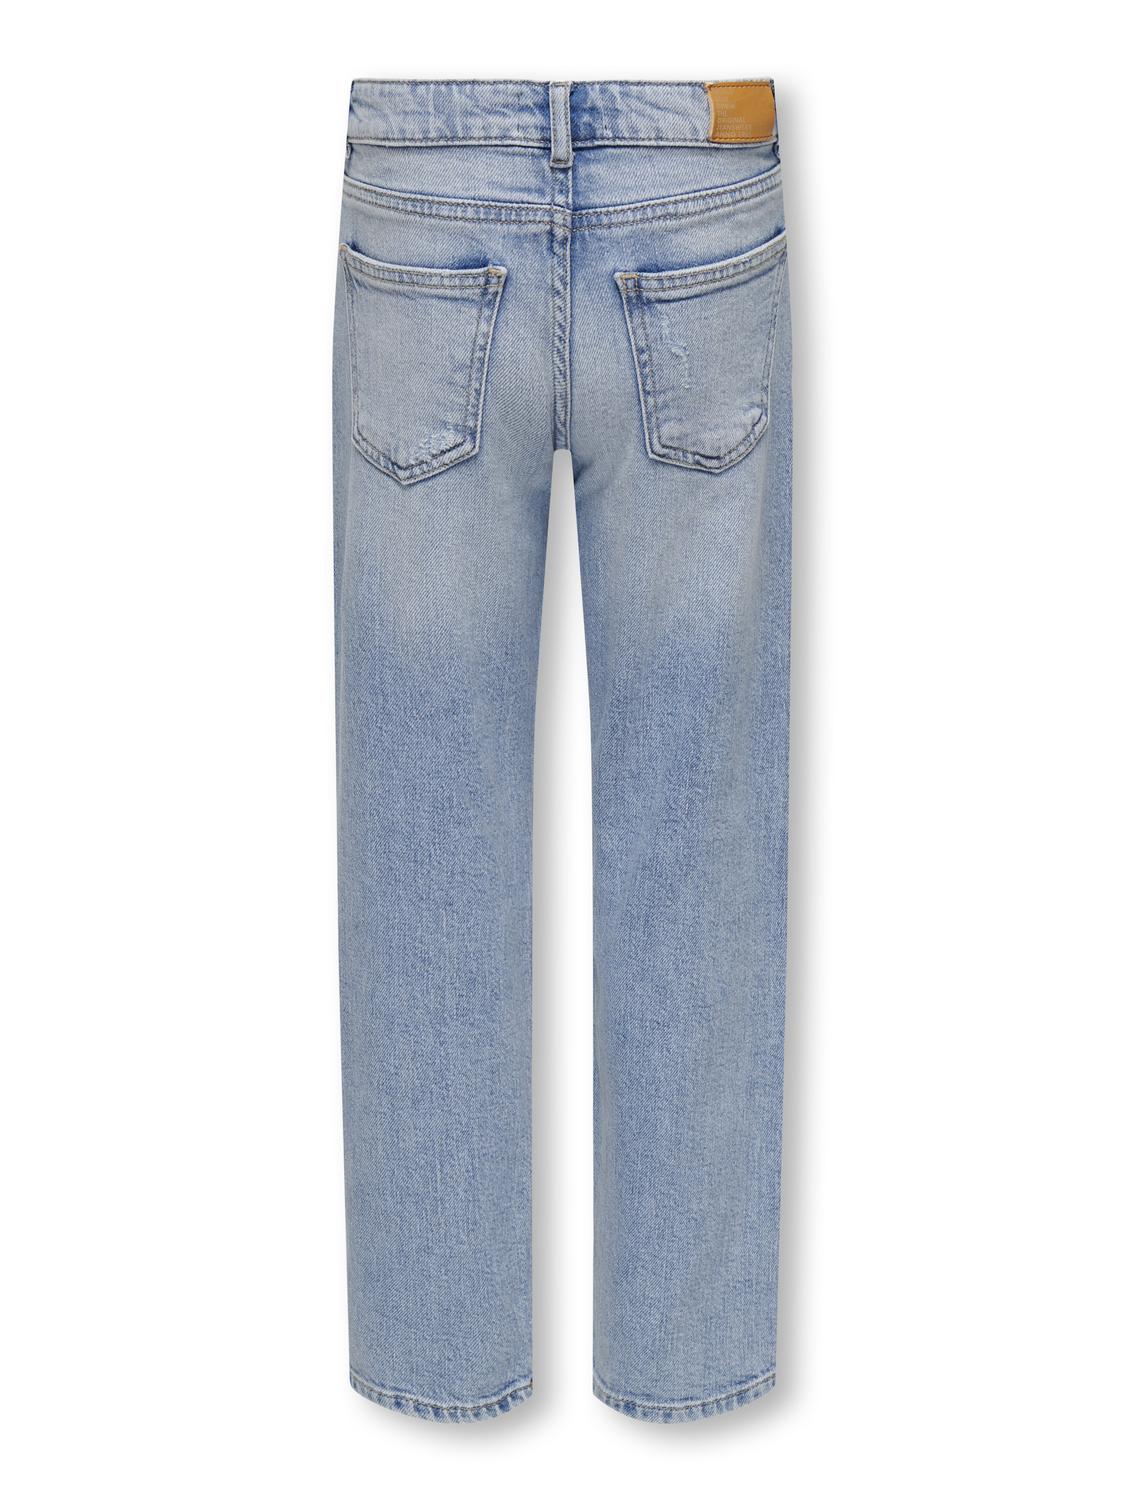 ONLY Jeans Wide Leg Fit Ourlé destroy -Light Blue Denim - 15302276